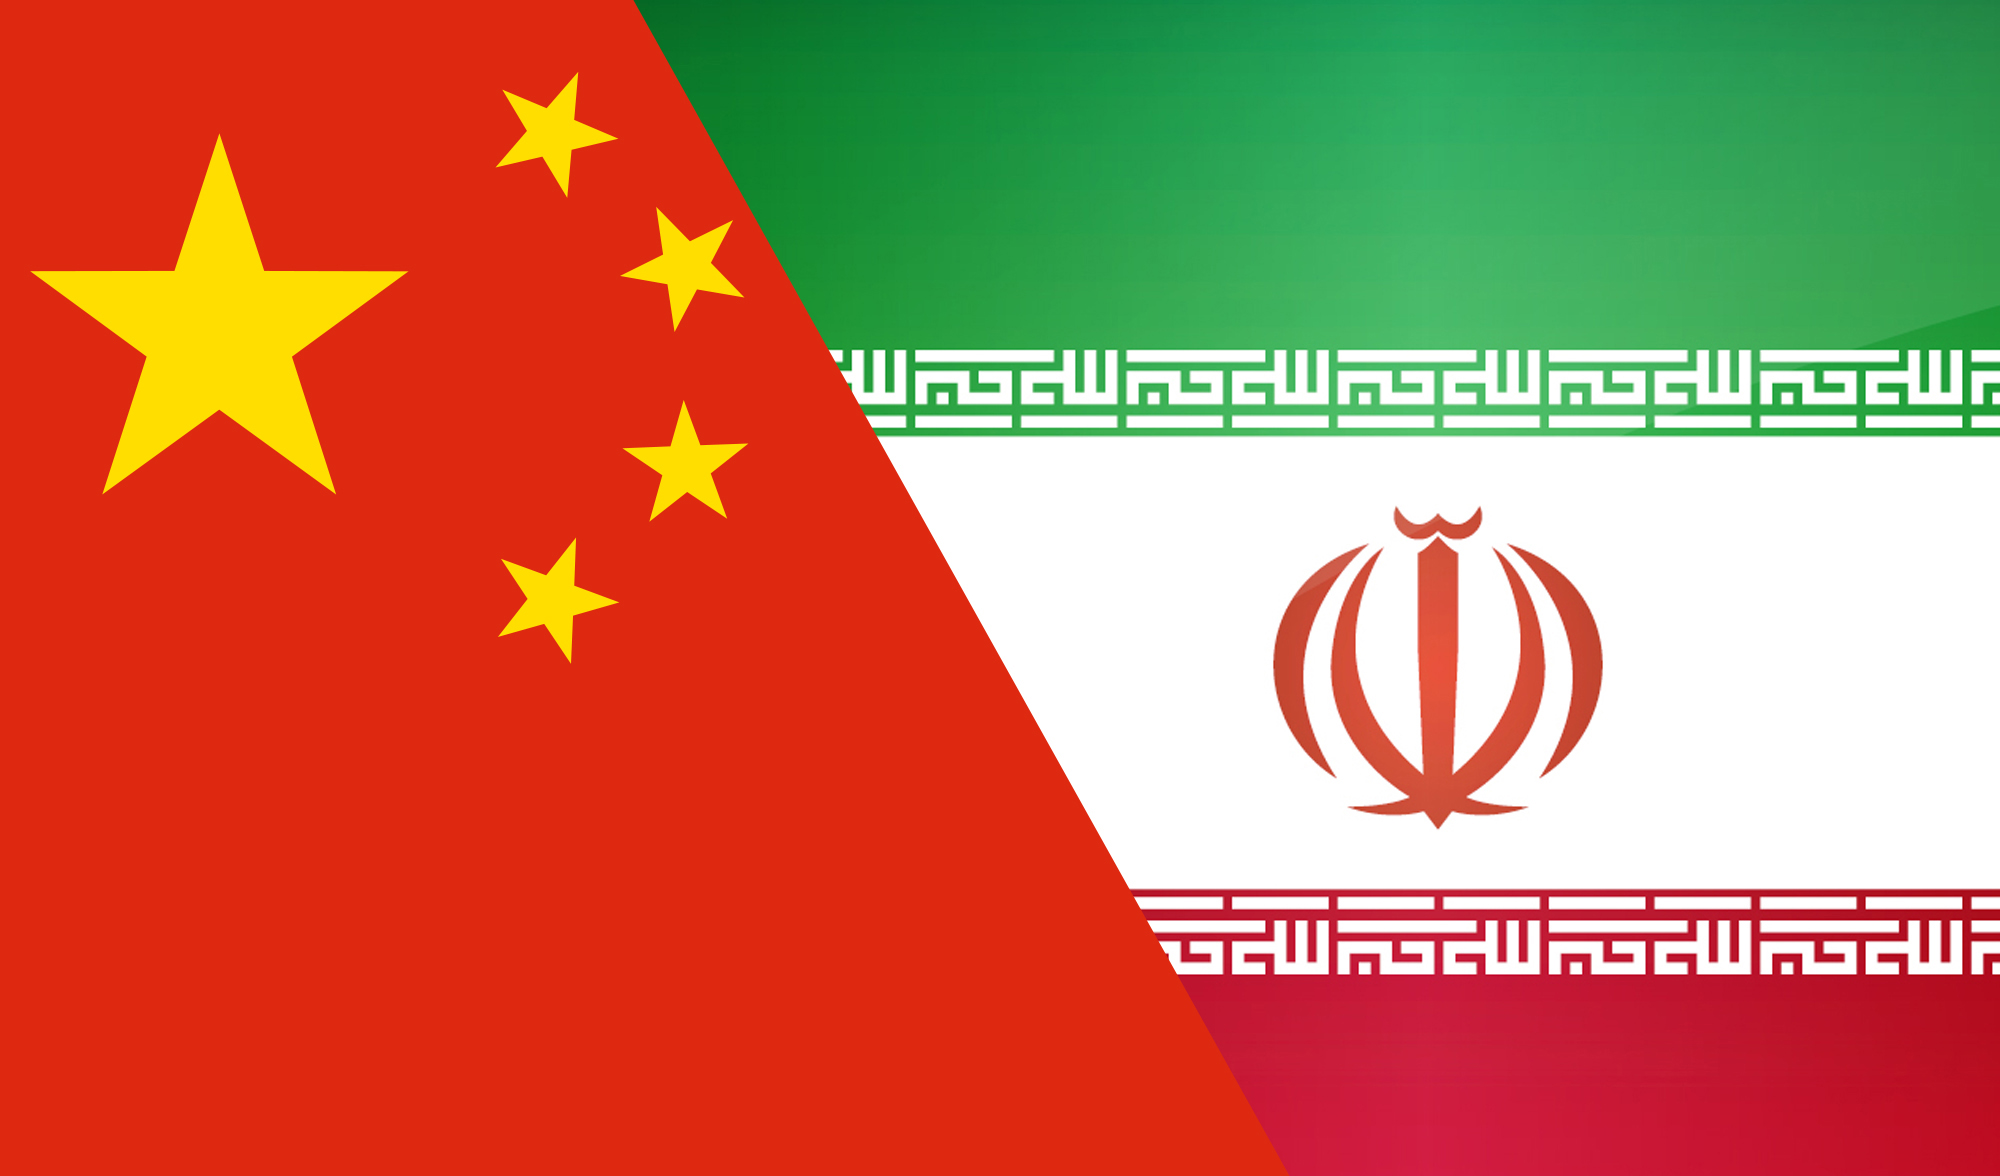 عدم تاثیرپذیری عوامل خارجی بر تجارت ایران و چین